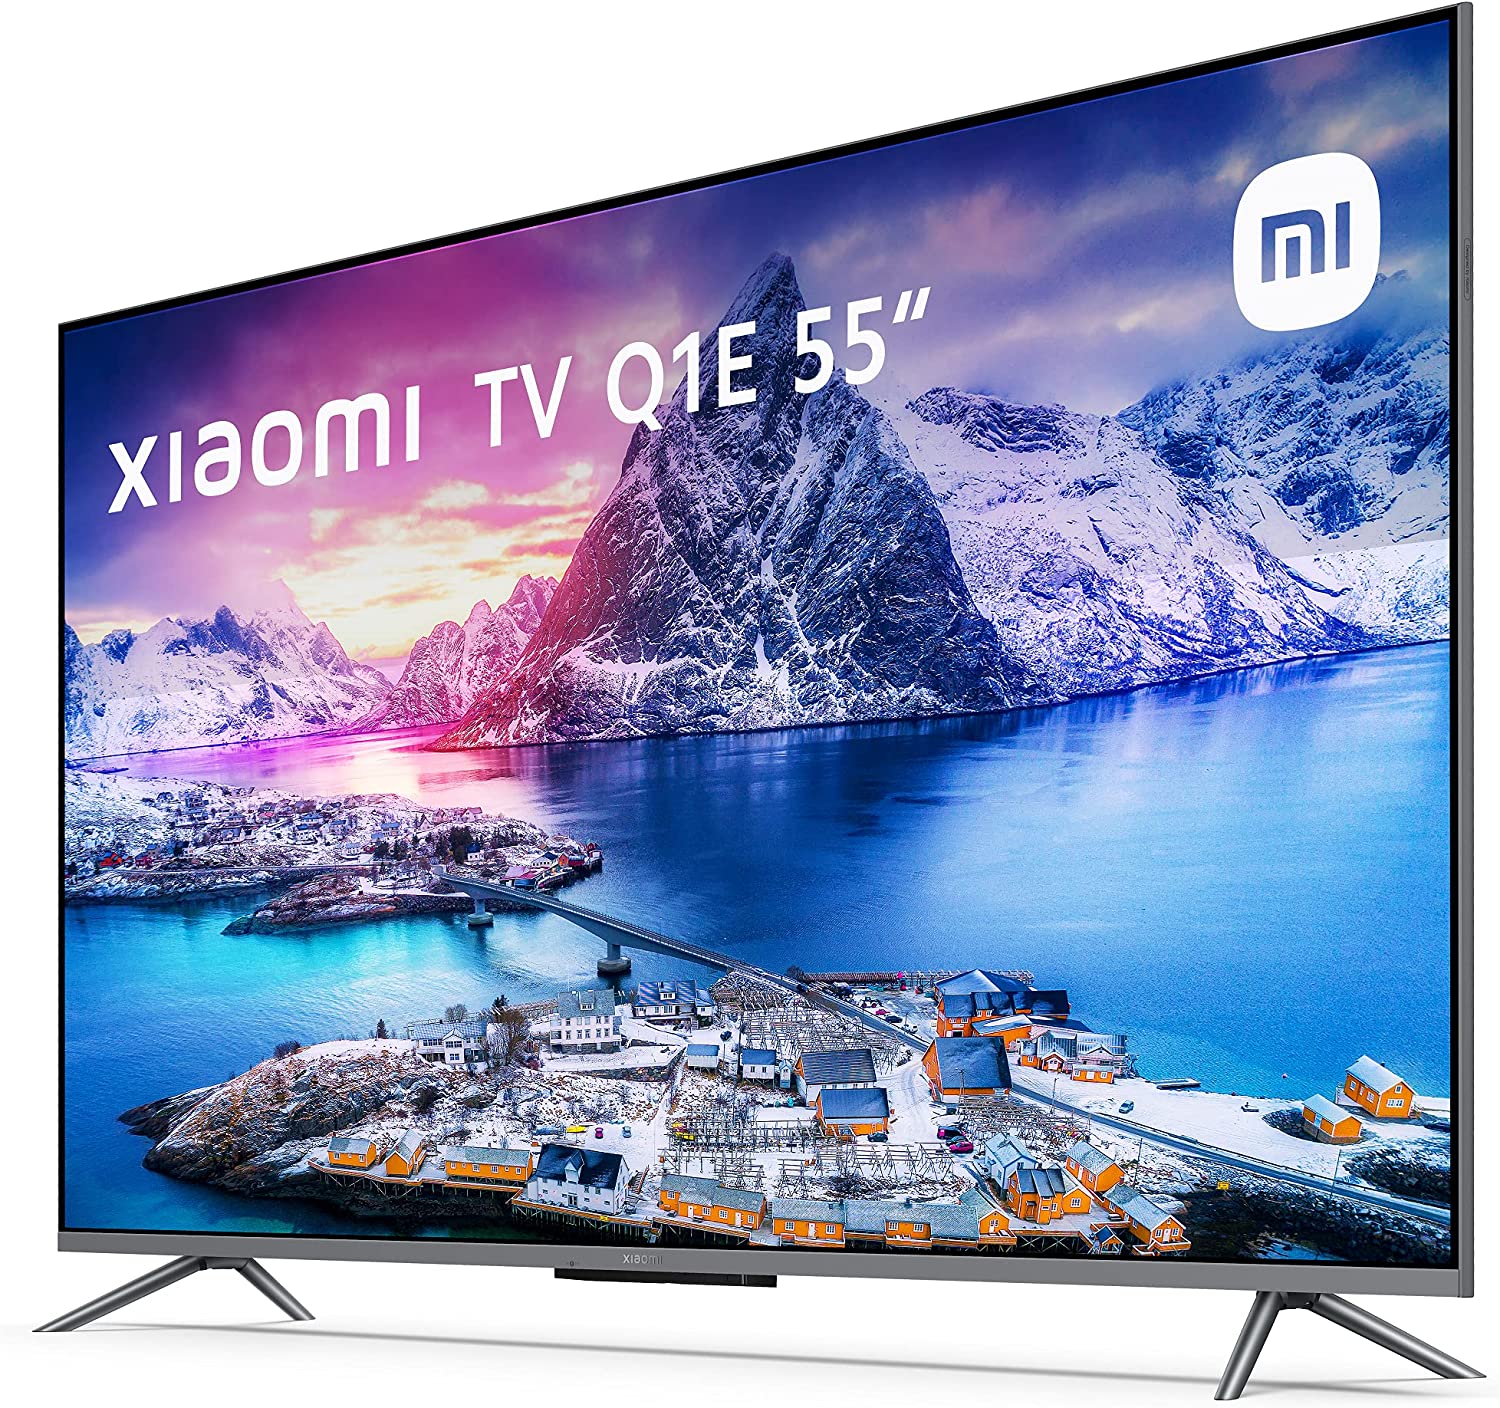 Xiaomi Mi TV Q1E Smart TV 55" QLED 4K HDR10+ - WiFi, HDMI, USB 2.0, Bluetooth - Angle de vision : 178° - VESA 200x200mm